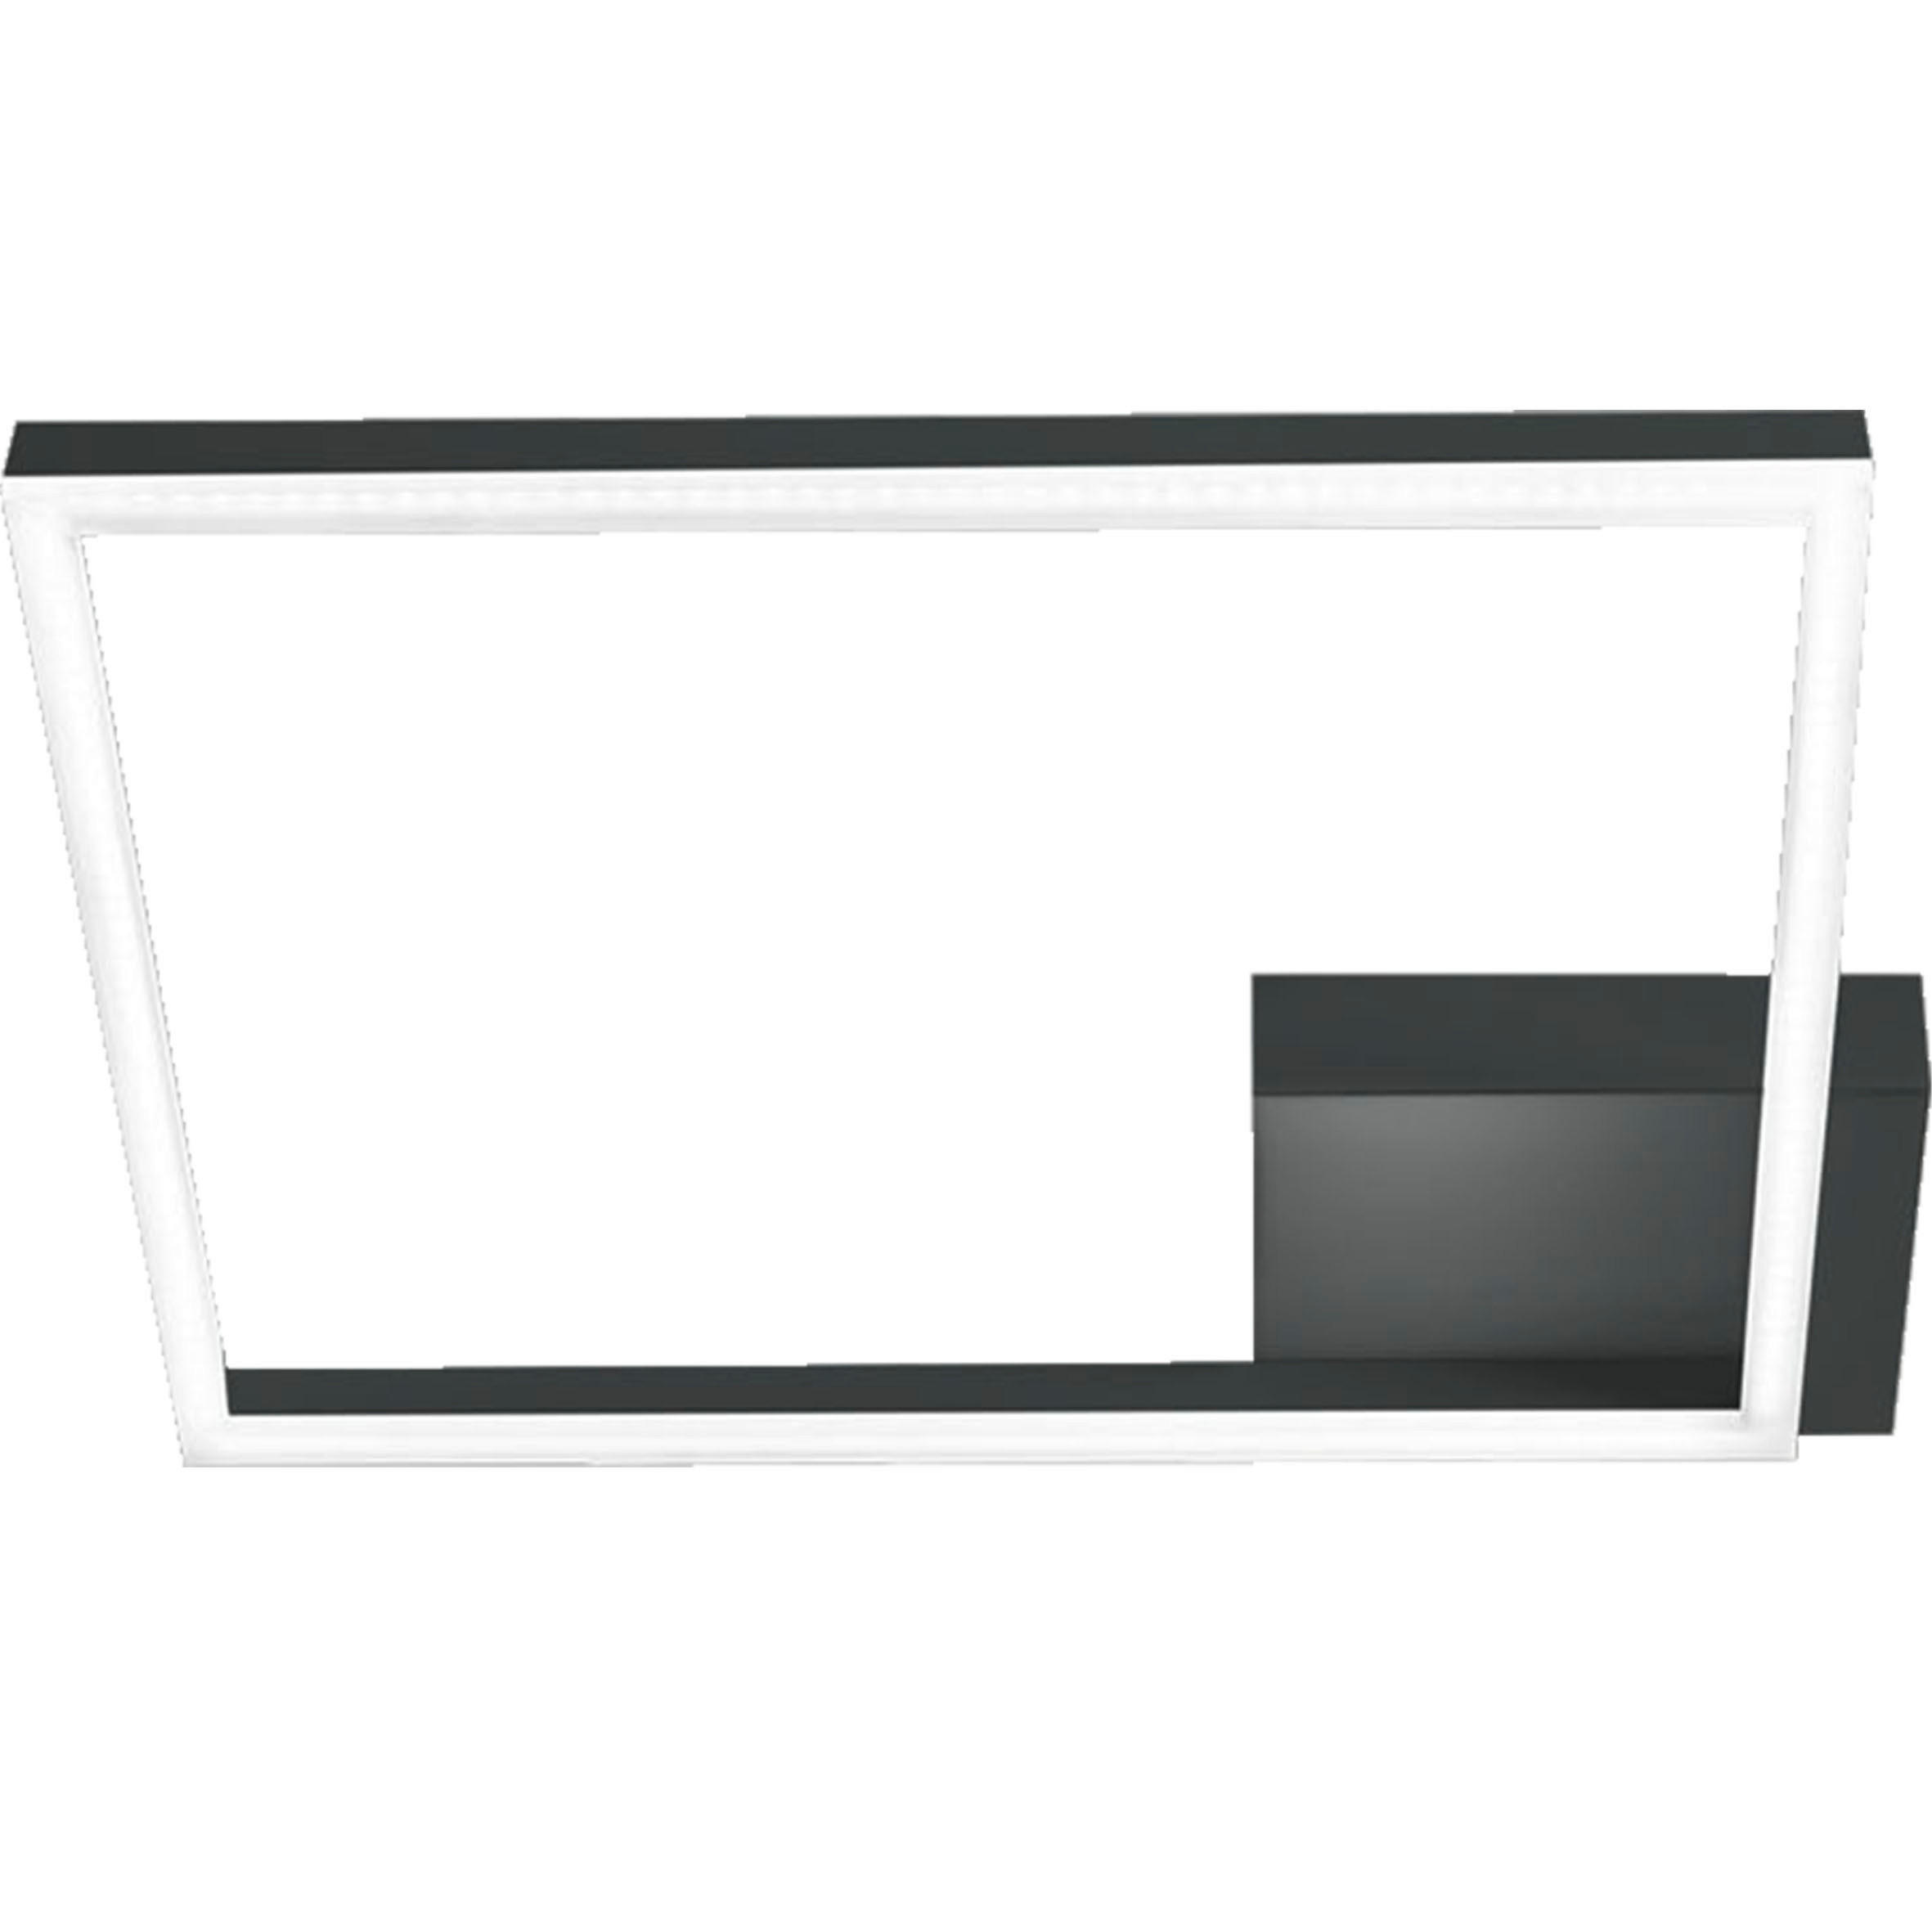 LED-WANDLEUCHTE Bard 45/45/6,5 cm   - Anthrazit, Design, Kunststoff/Metall (45/45/6,5cm) - Fabas Luce